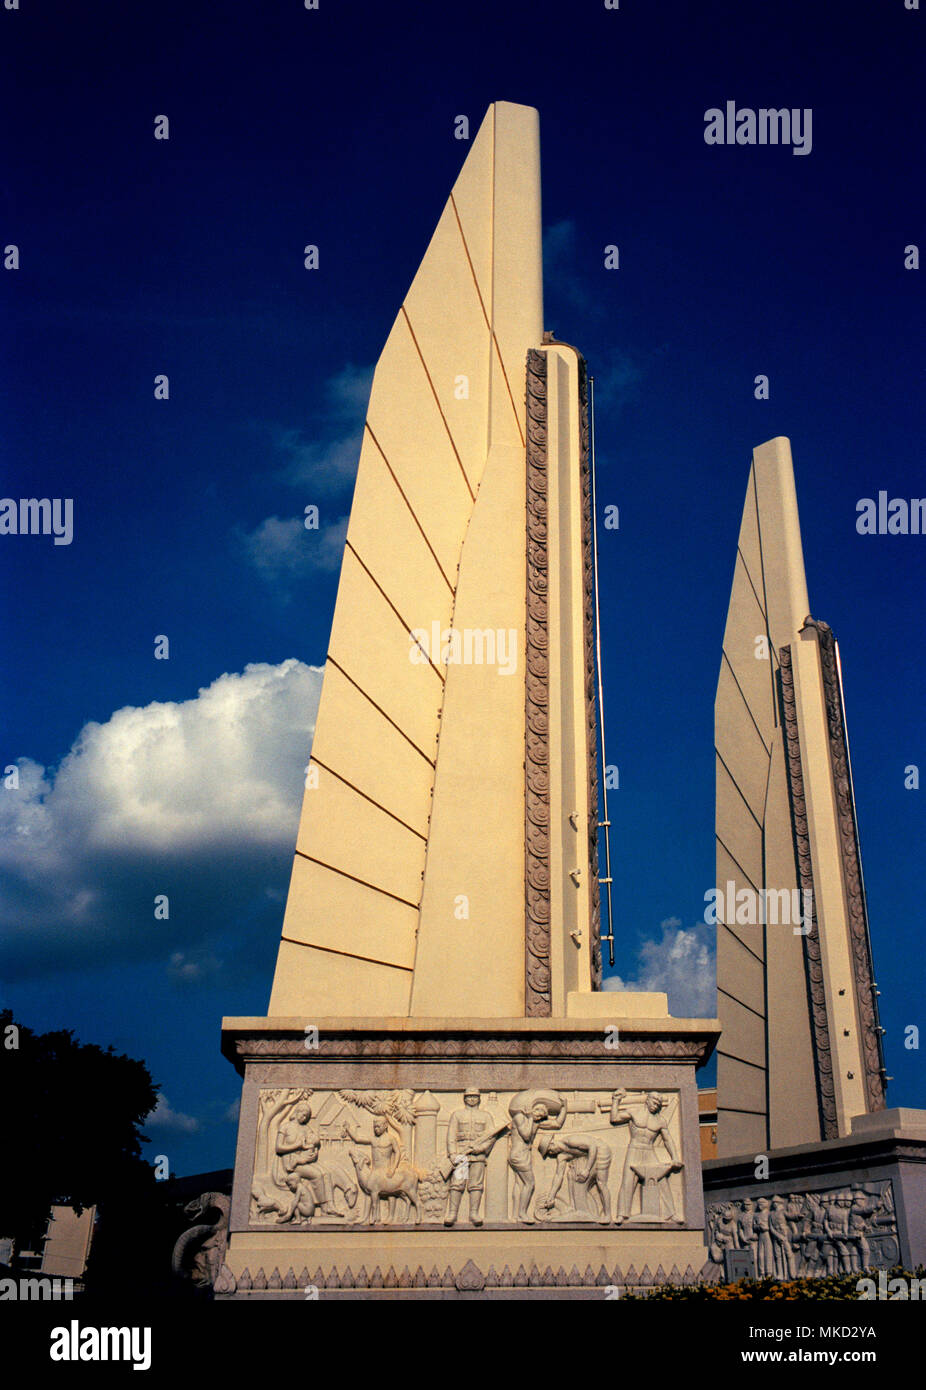 Storia tailandese - Democrazia monumento Prachathipatal Anusawari edificio in Bangkok in Thailandia nel sud-est asiatico in Estremo Oriente. Architettura arte Travel Foto Stock